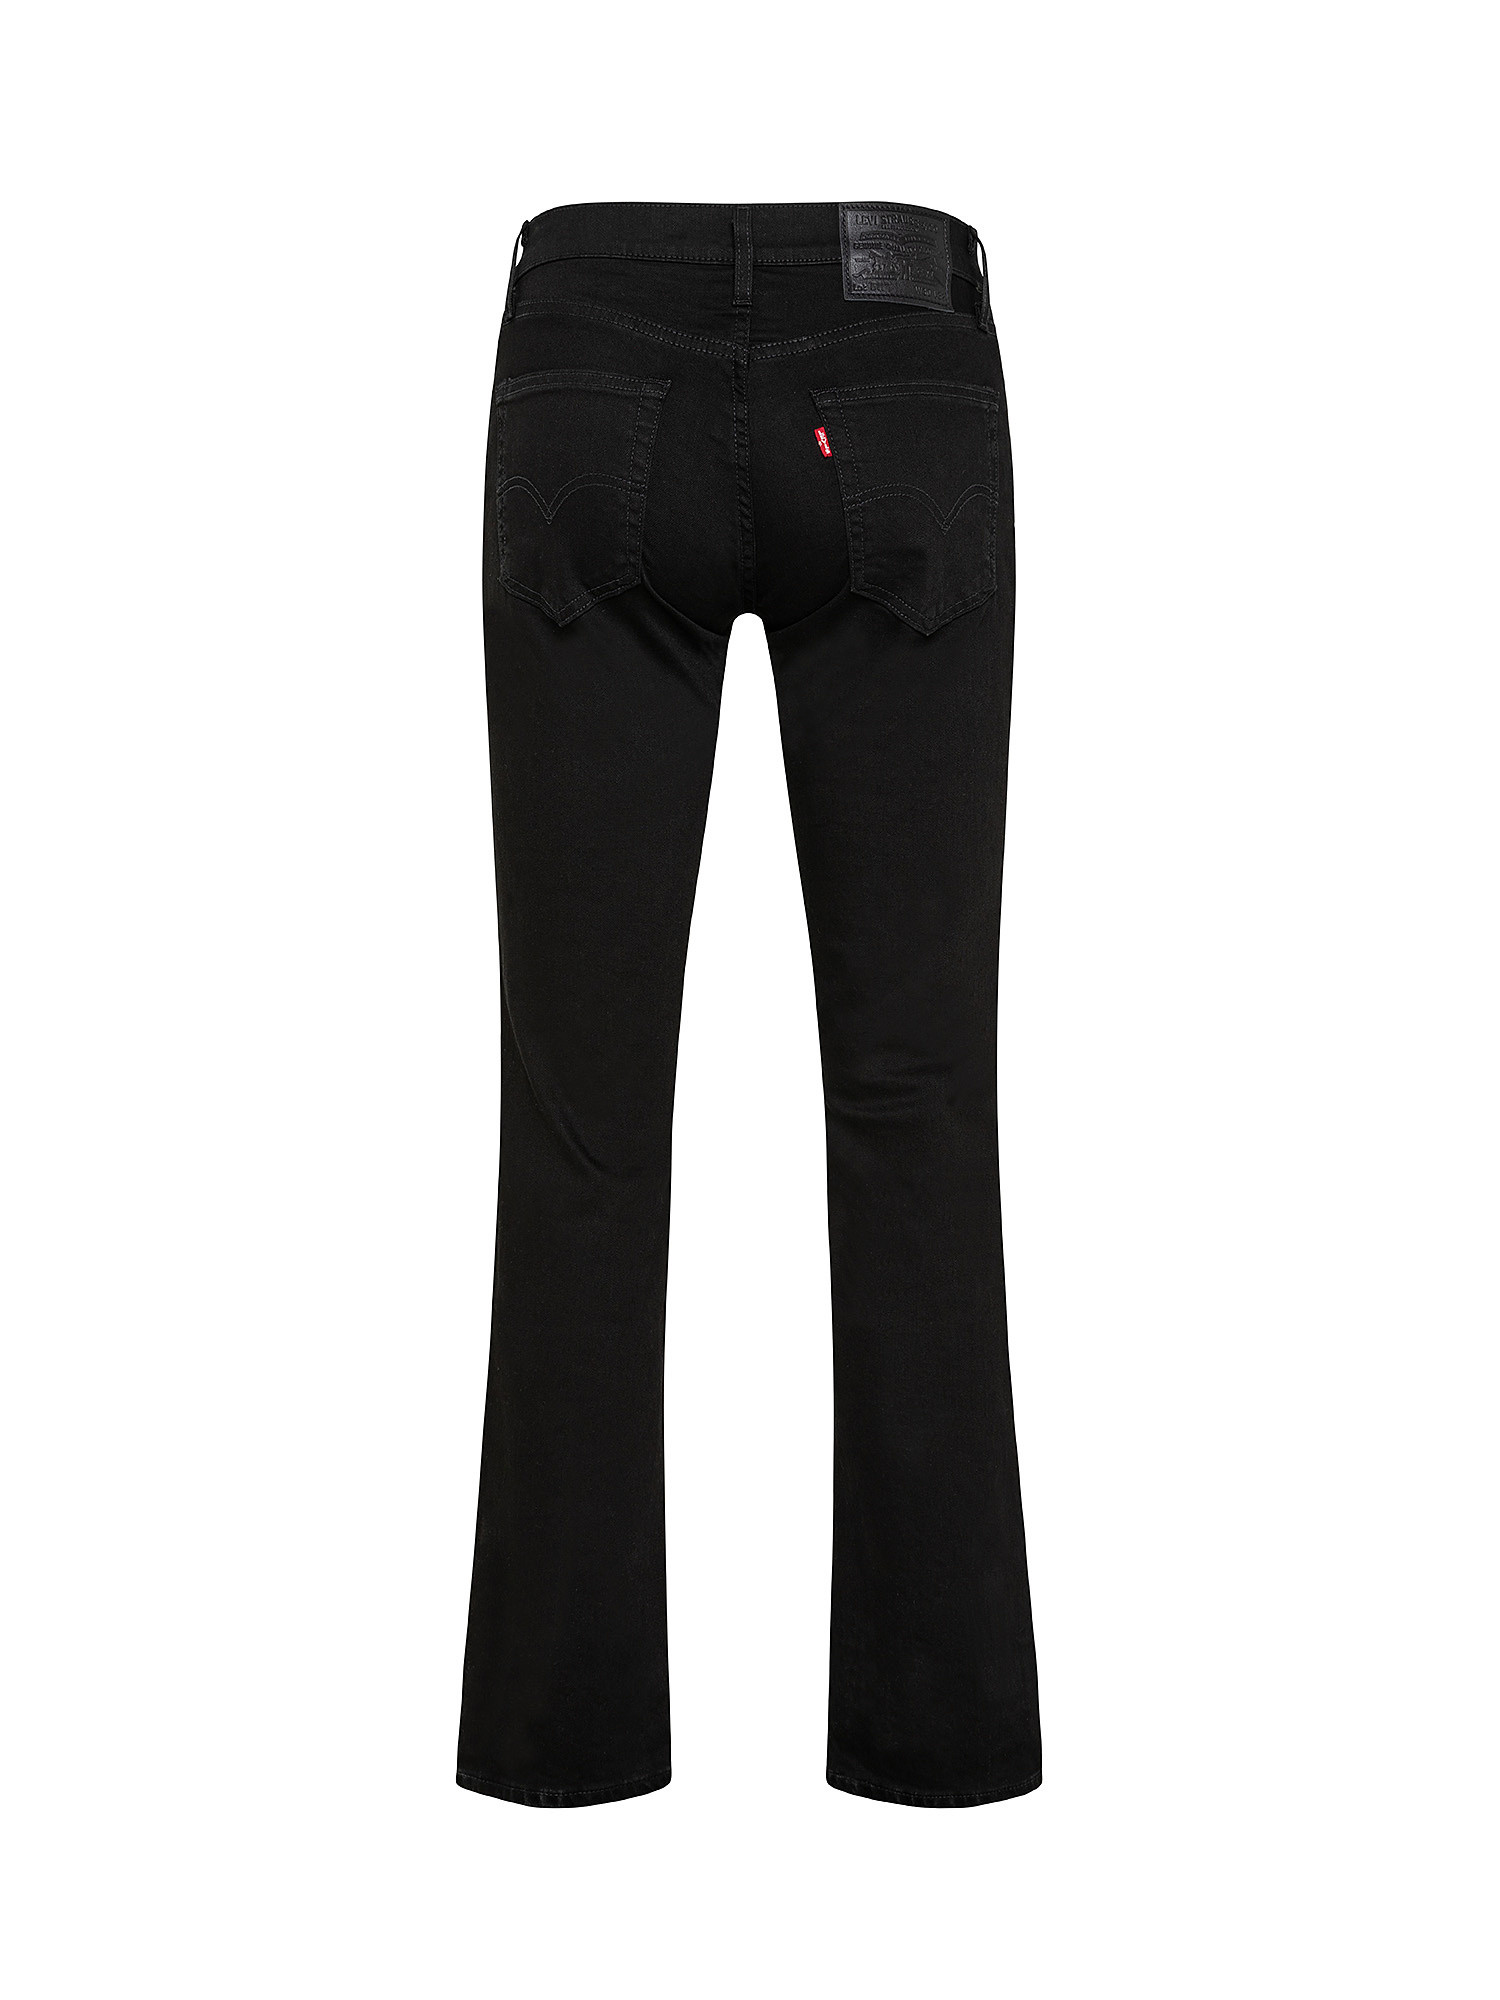 Five pocket jeans, Black, large image number 1